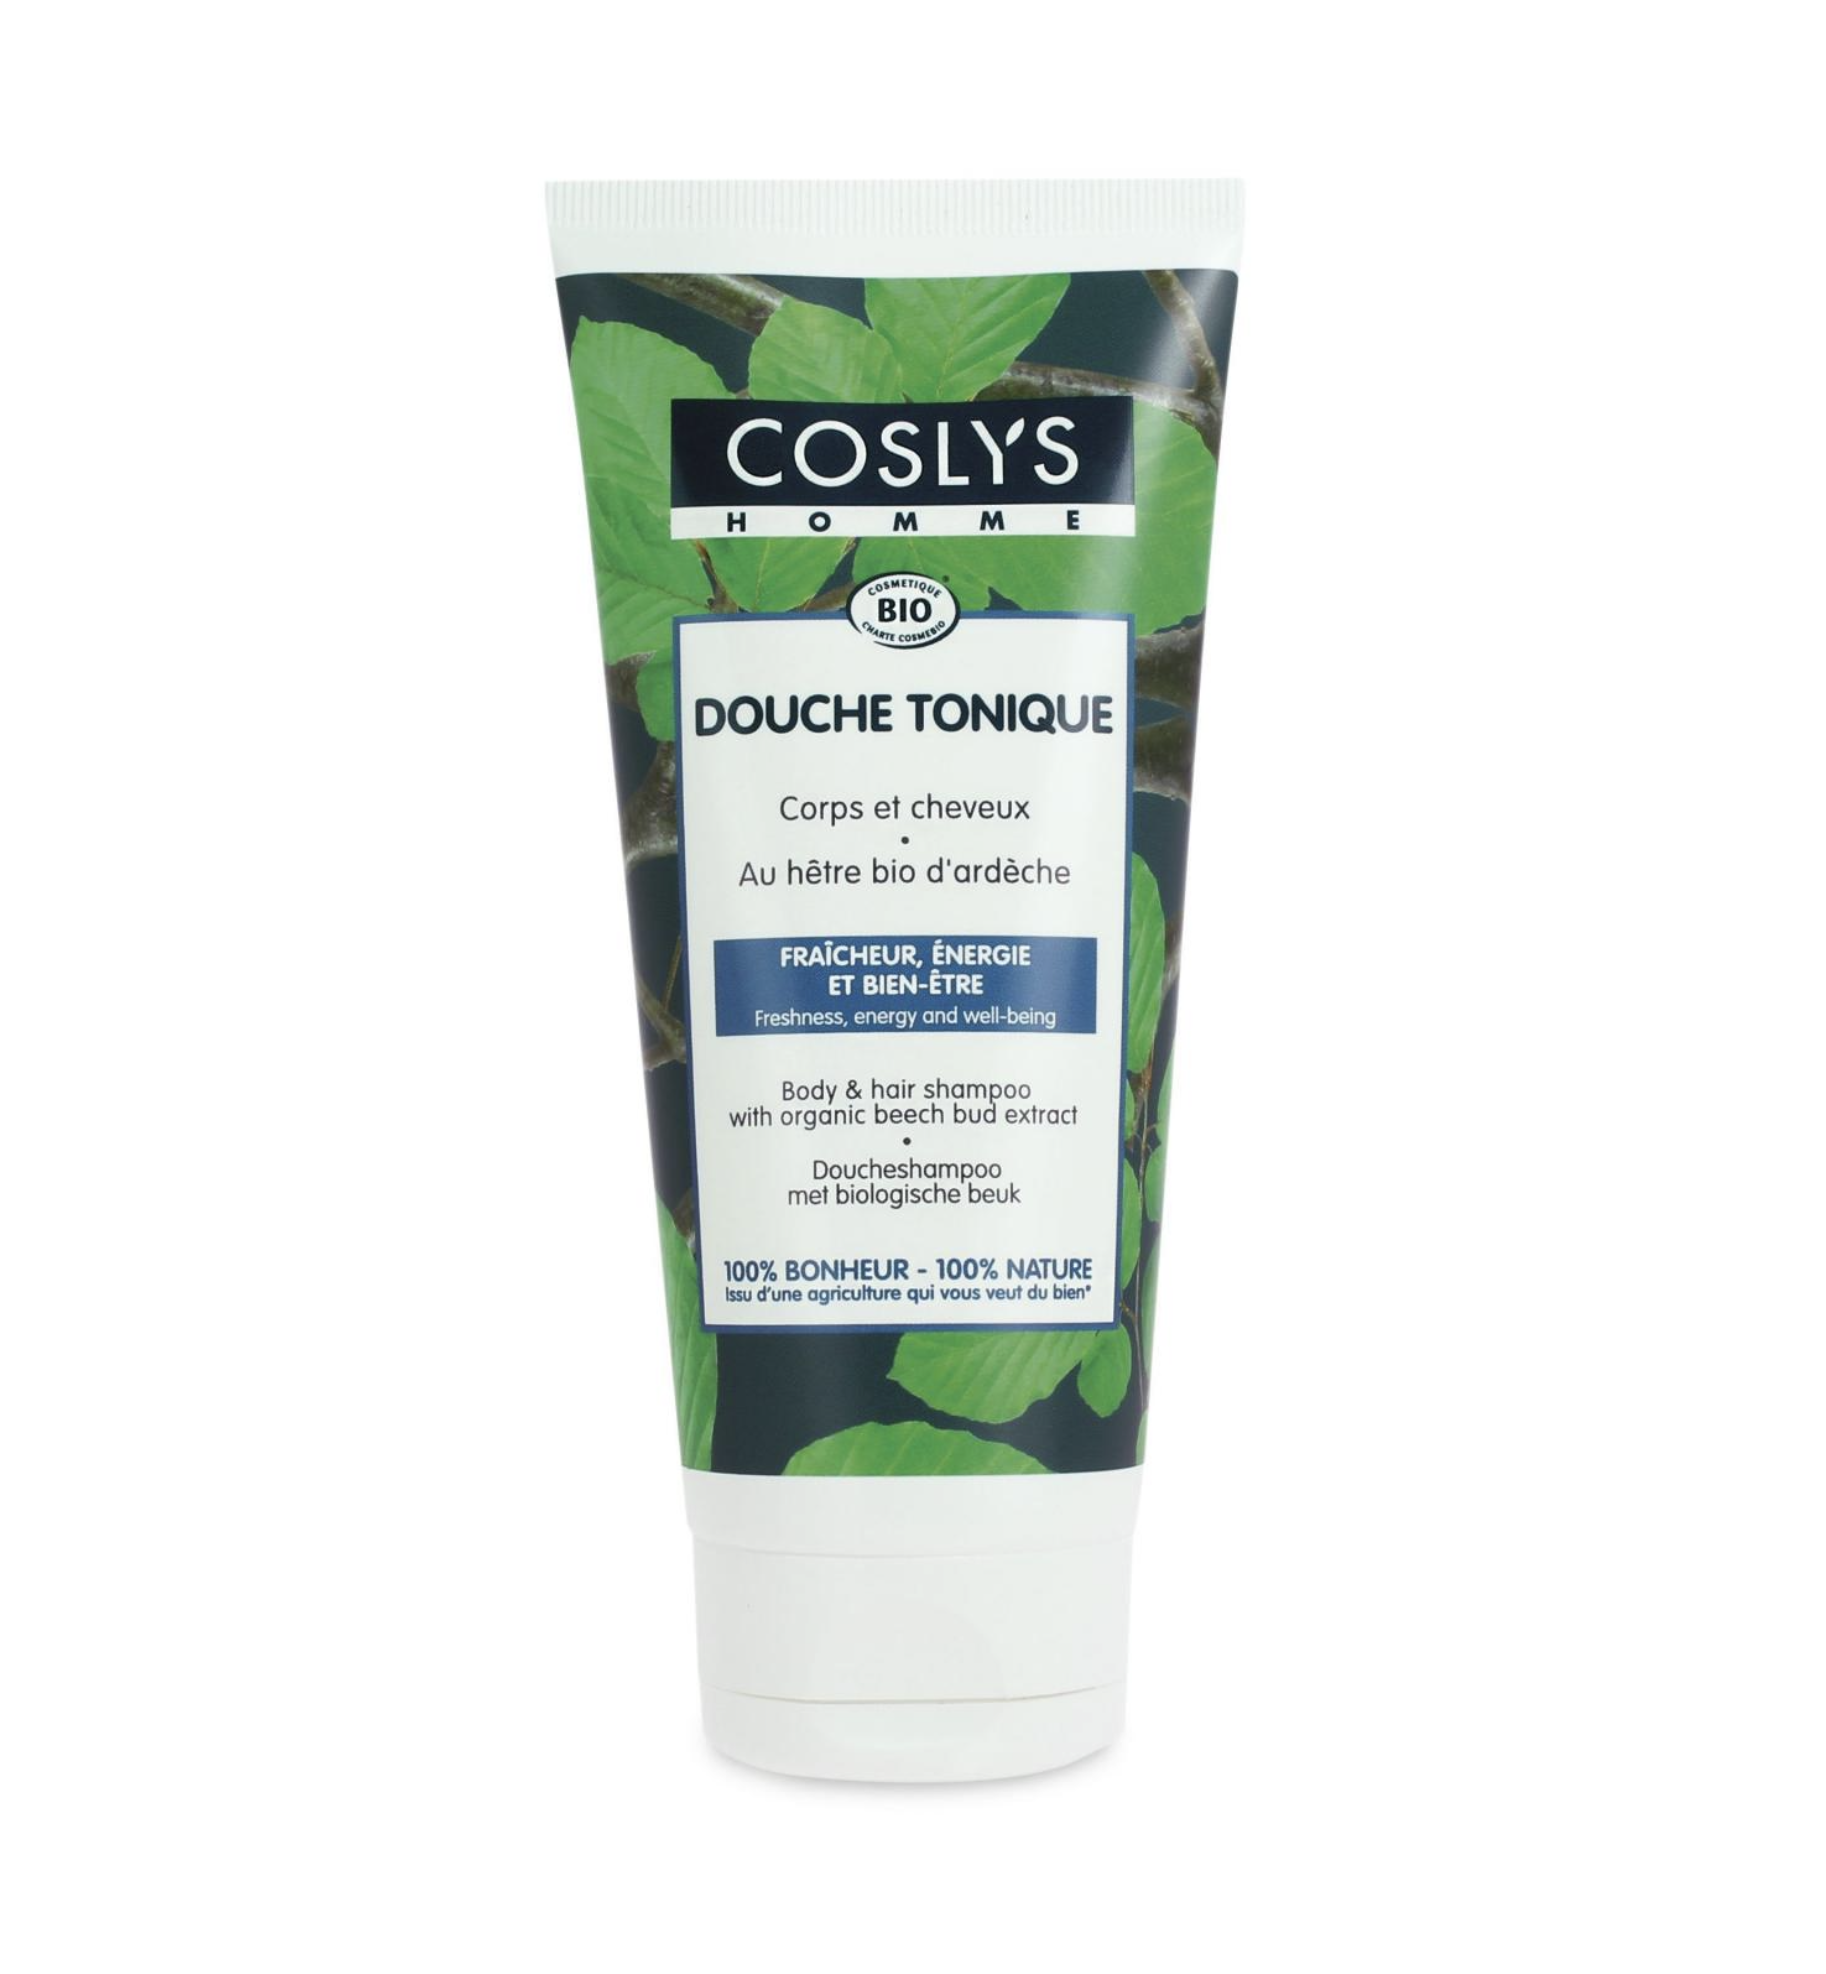 COSLYS - Sprchový šampon pro muže, HOMME BIO, 200 ml *CZ-BIO-001 certifikát